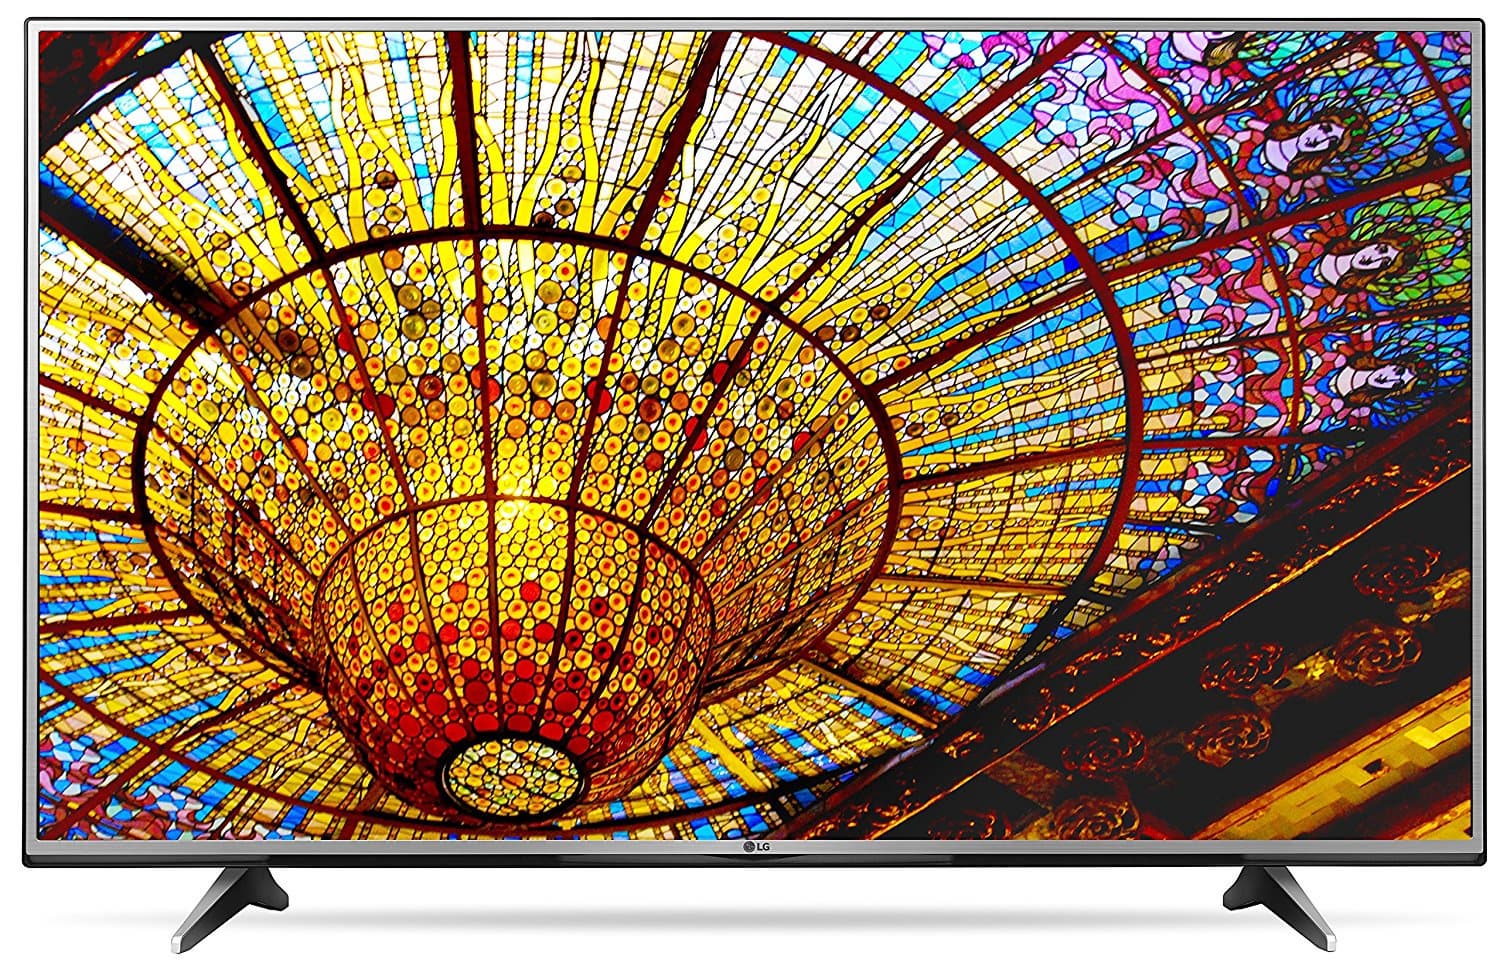 LG Electronics 55UH6150 55_Inch 4K Ultra HD Smart LED TV _20